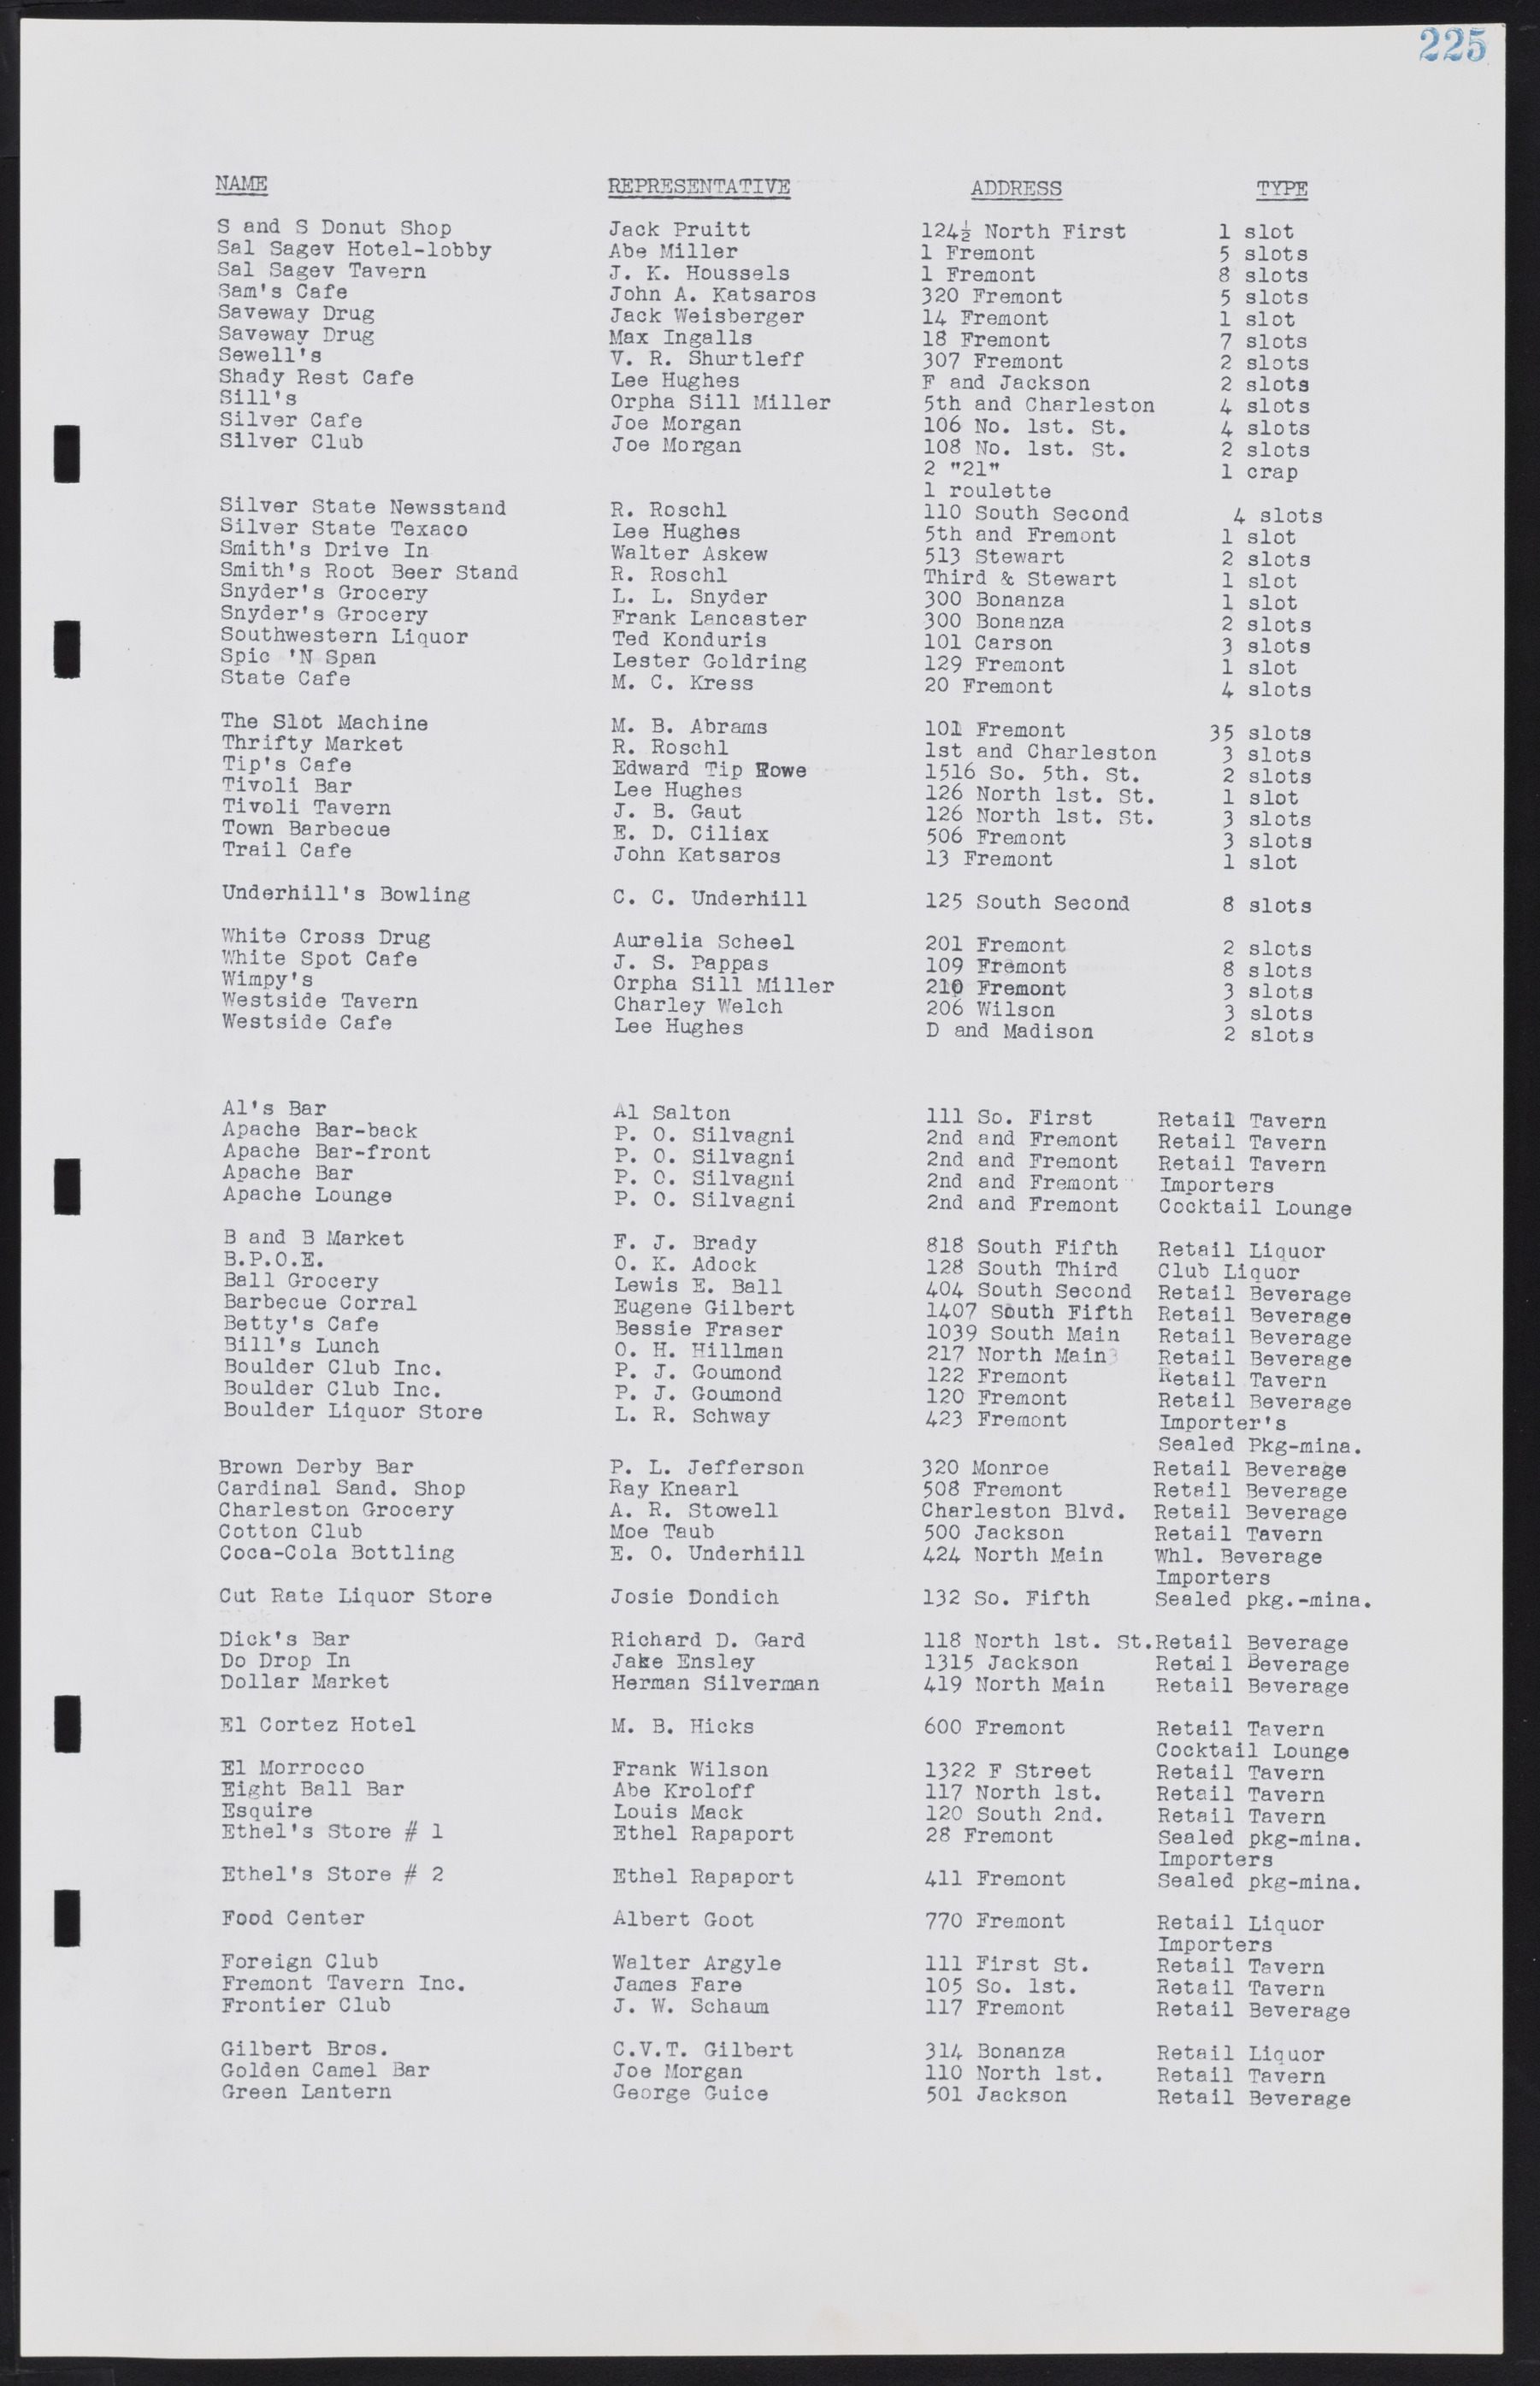 Las Vegas City Commission Minutes, August 11, 1942 to December 30, 1946, lvc000005-245